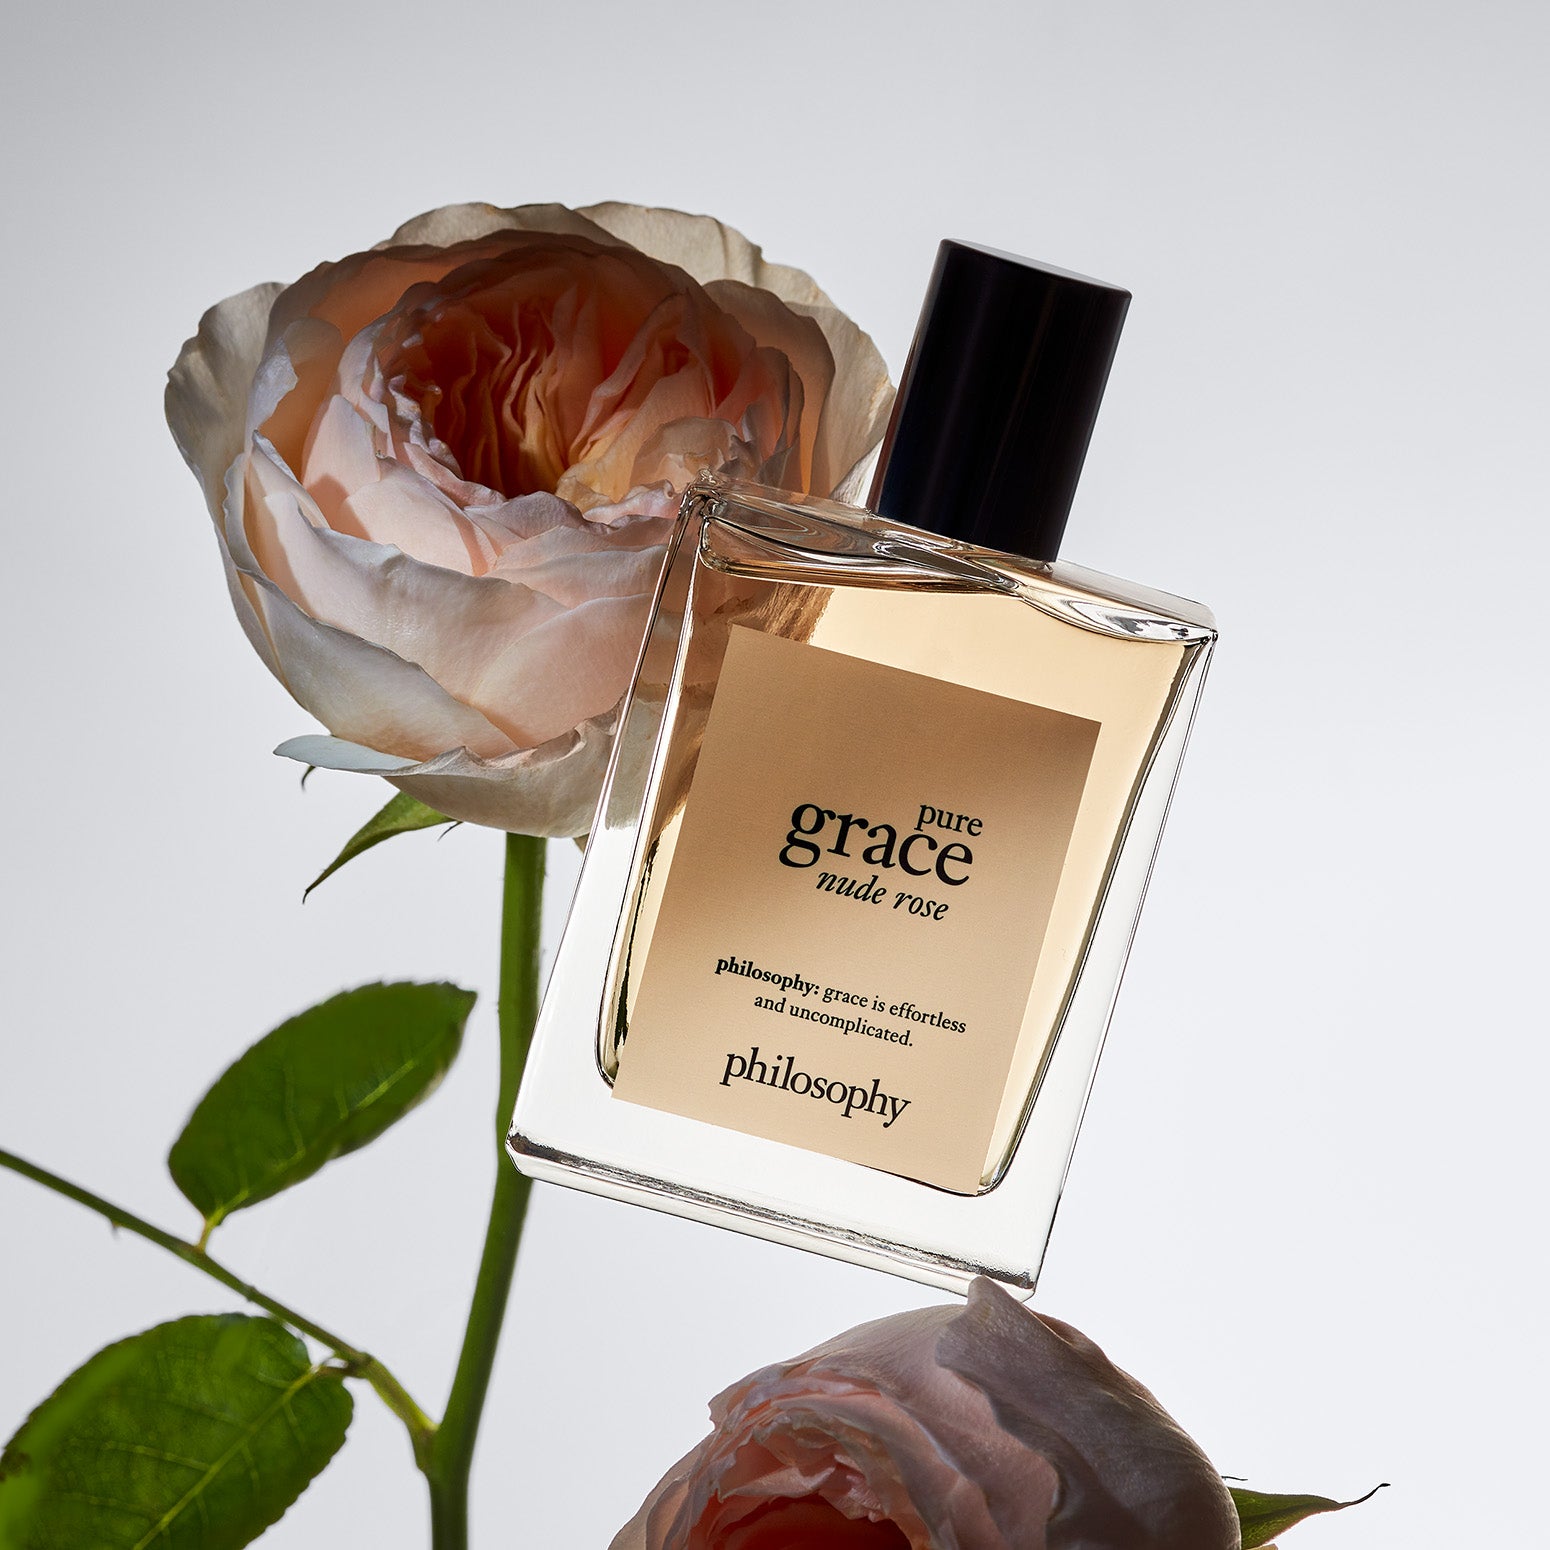 Philosophy - Pure Grace Nude Rose Spray Fragrance Eau de Toilette